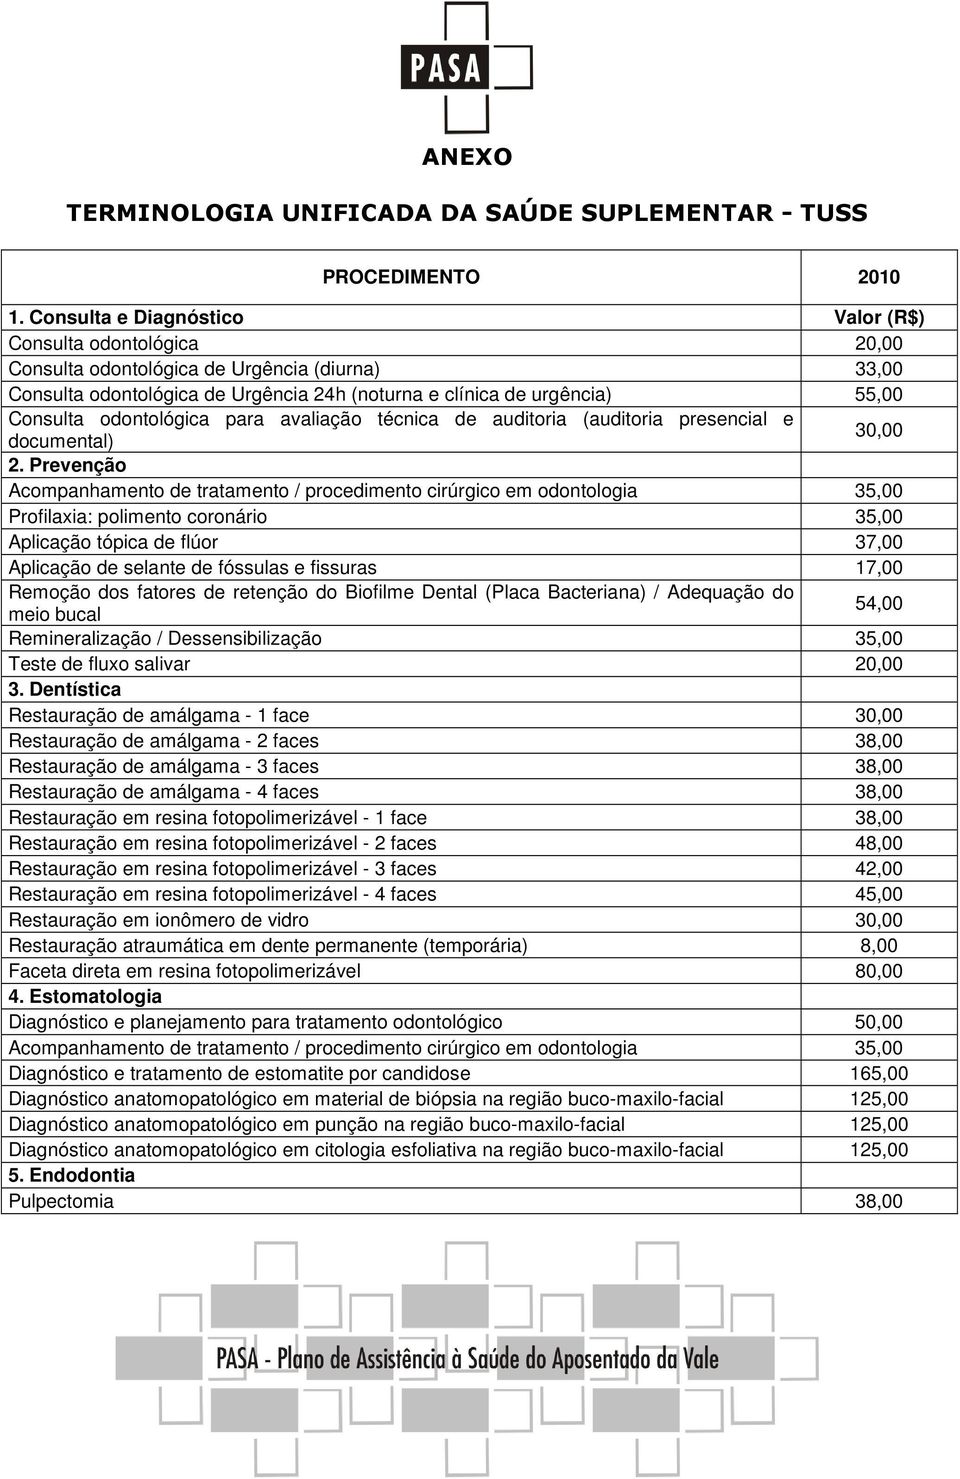 odontológica para avaliação técnica de auditoria (auditoria presencial e documental) 30,00 2.